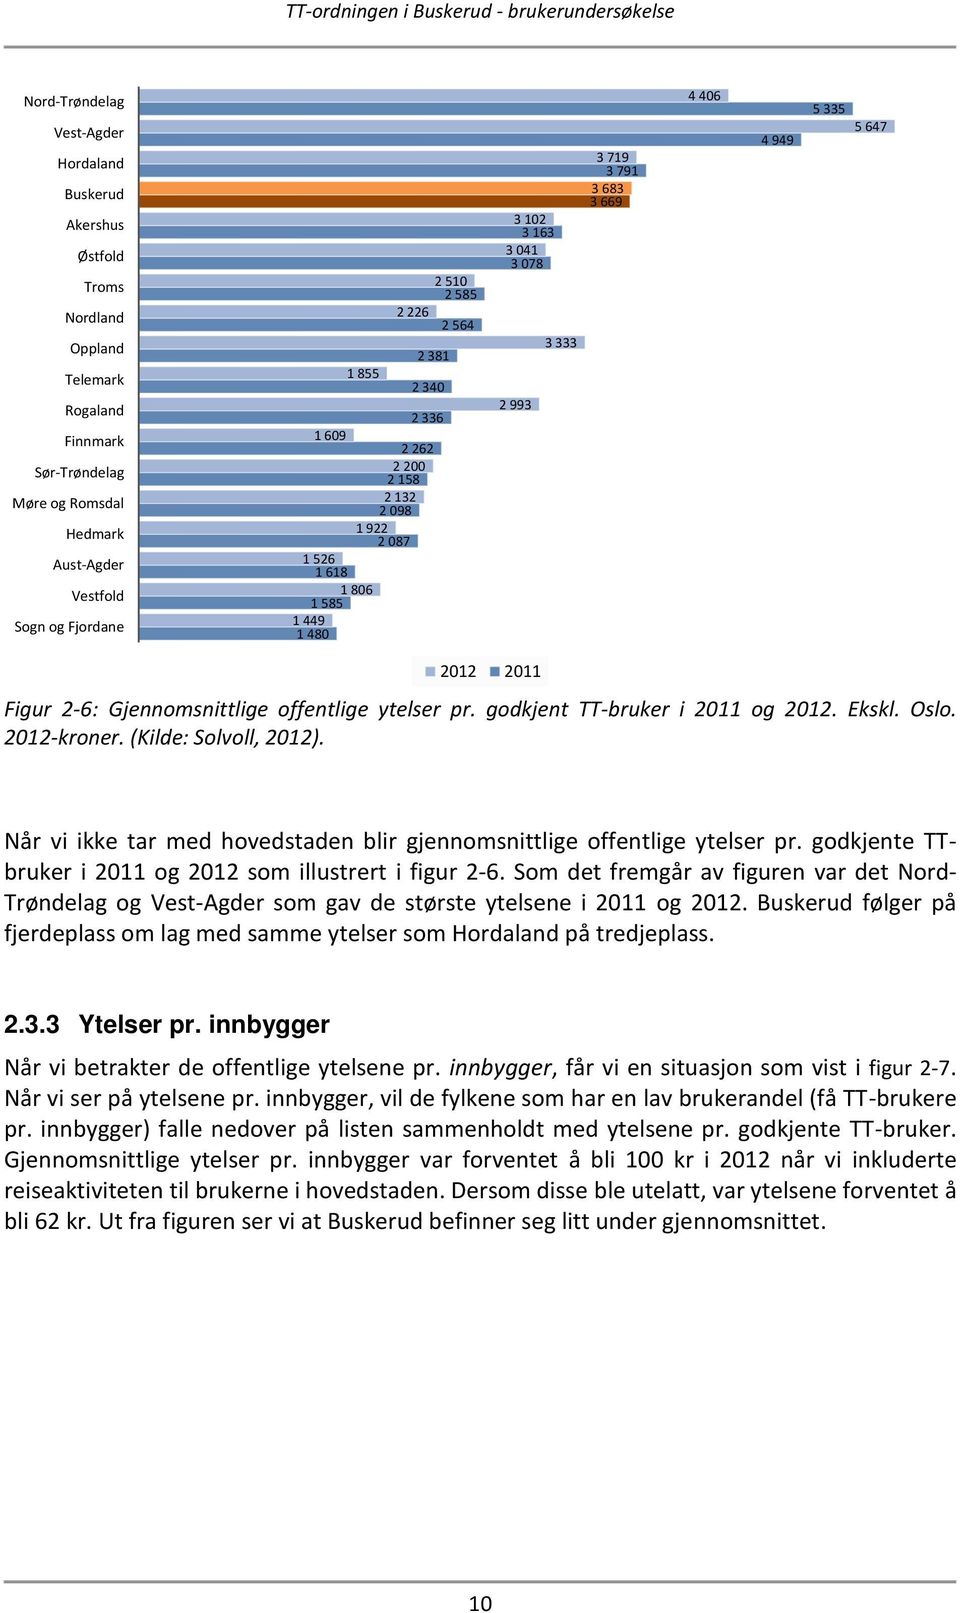 647 2012 2011 Figur 2-6: Gjennomsnittlige offentlige ytelser pr. godkjent TT-bruker i 2011 og 2012. Ekskl. Oslo. 2012-kroner. (Kilde: Solvoll, 2012).